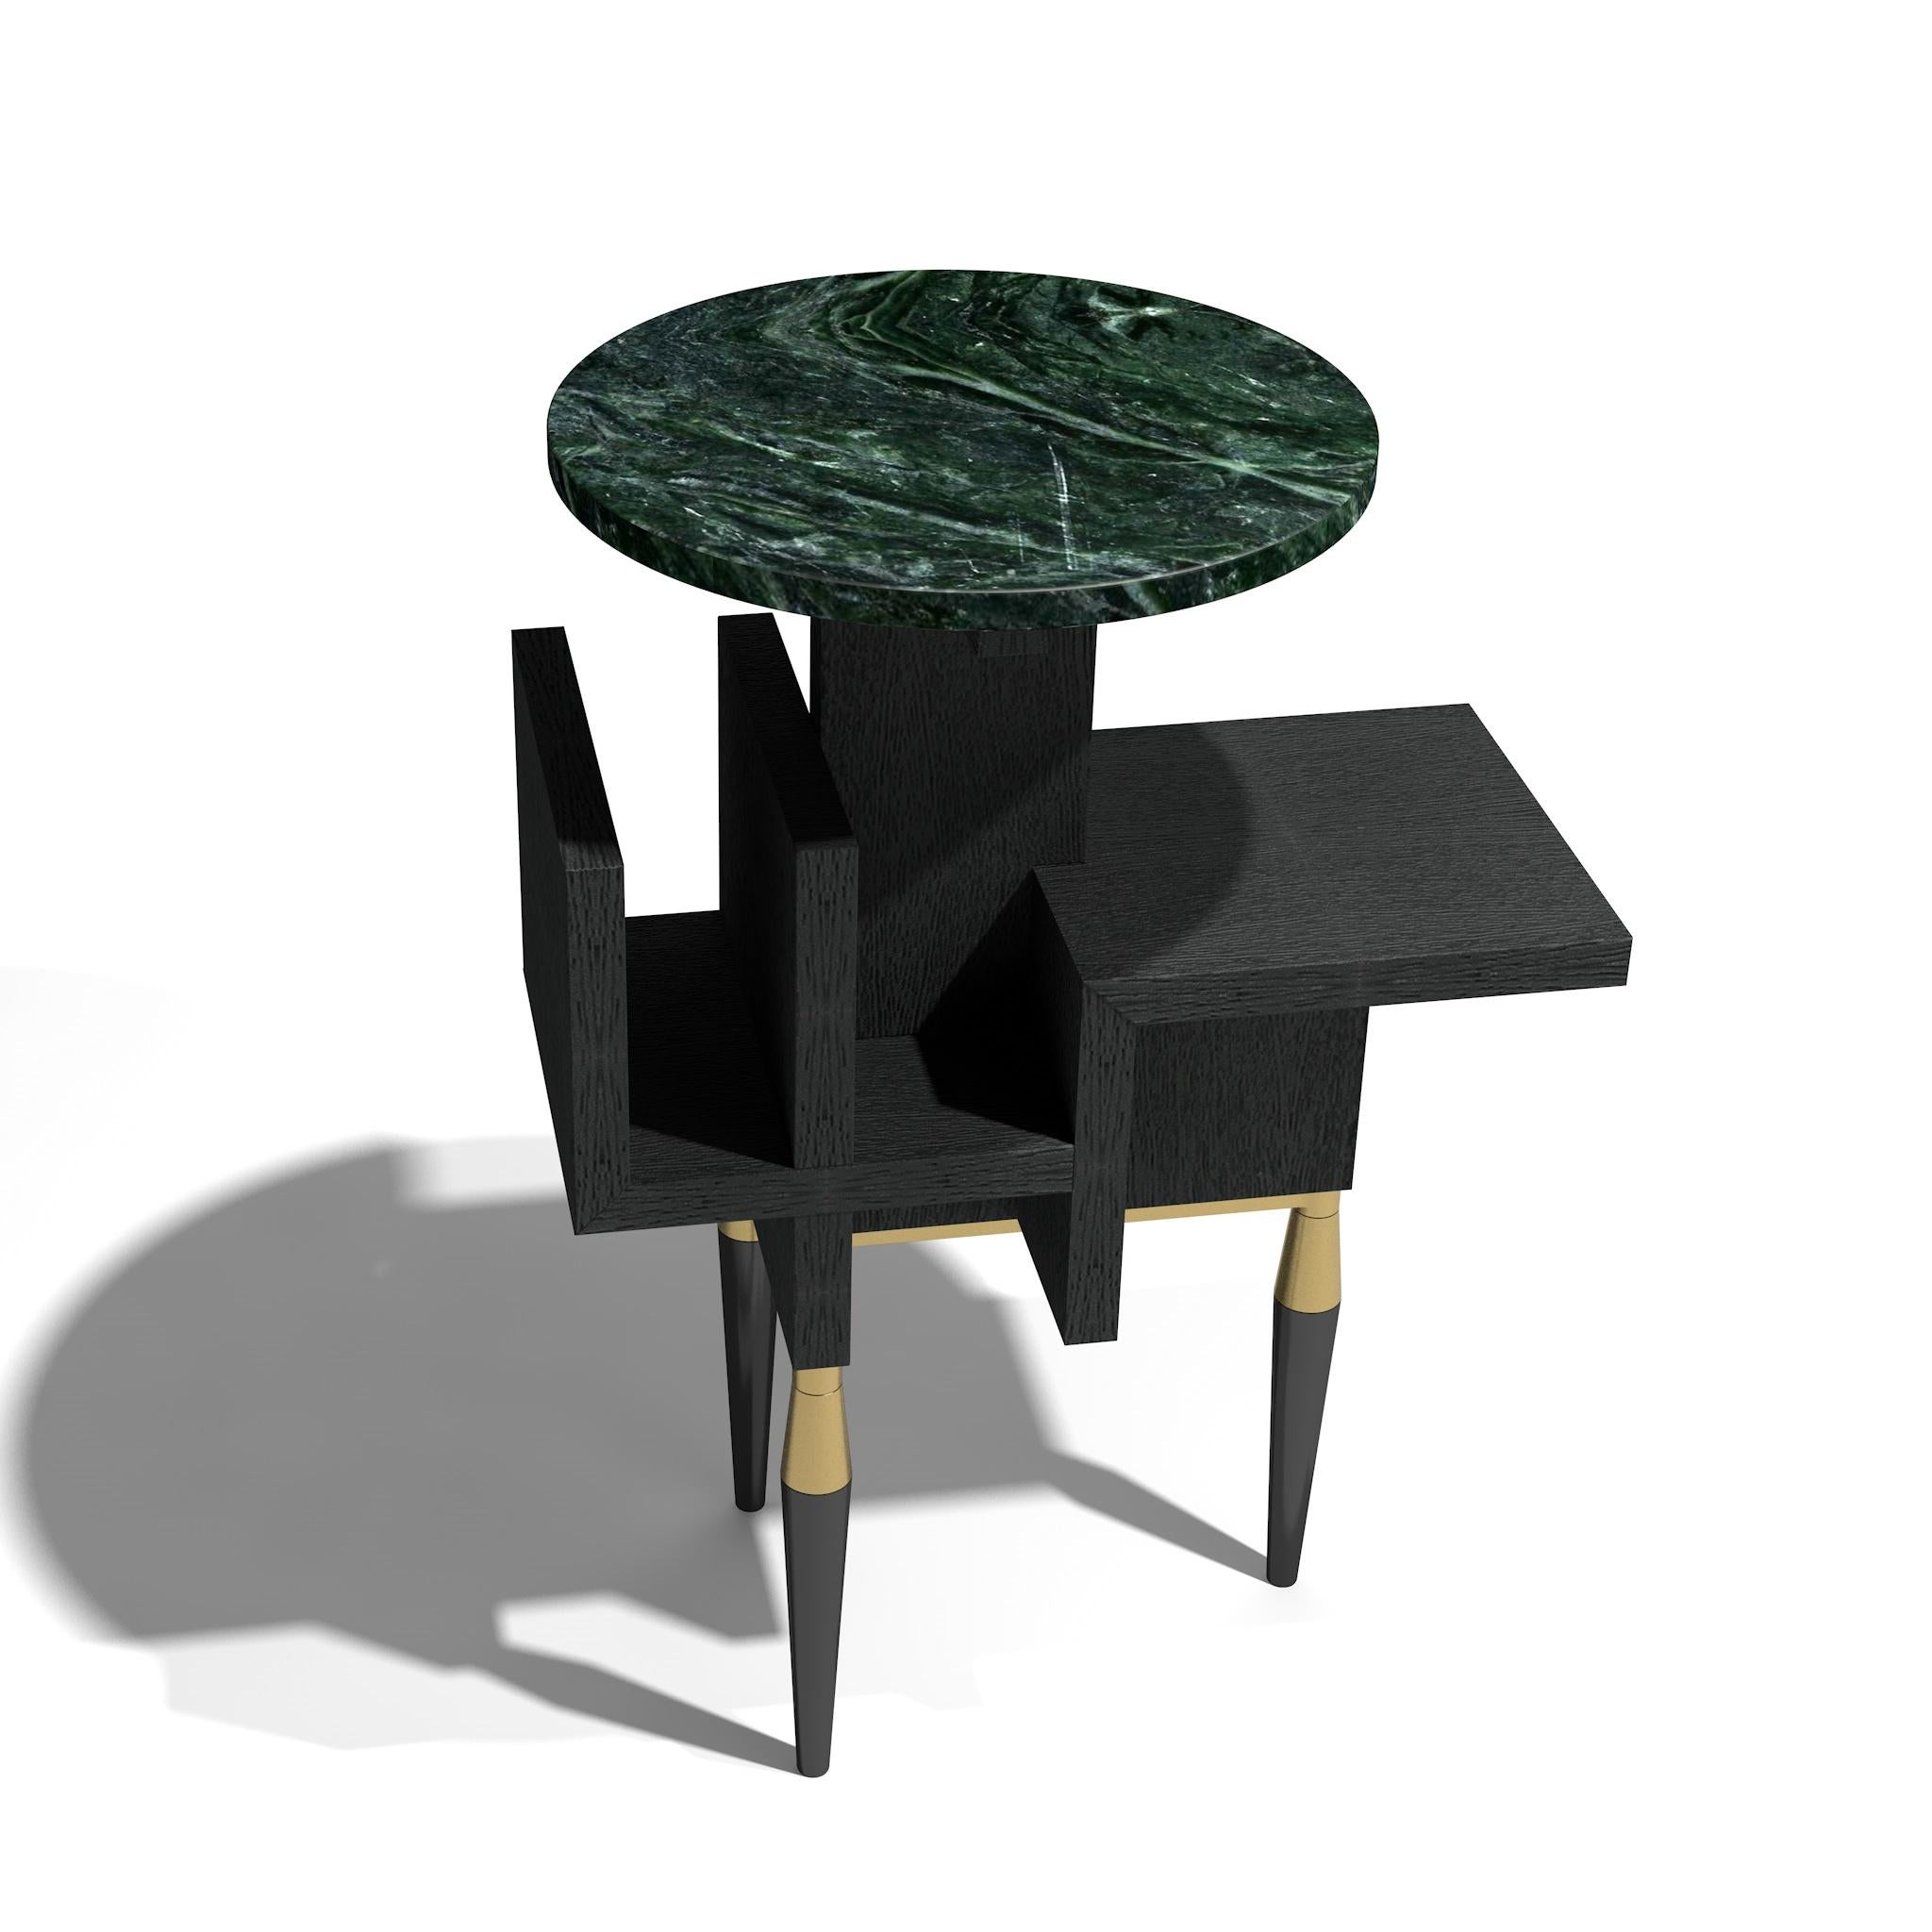 Cette table de salon est le fruit d'un travail artisanal minutieux réalisé à l'aide de différents matériaux de haute qualité : pierre, bois et laiton. 
Comme tous les objets du studio 1 + 11, la table Cosmo est un jeu de formes, de lignes et de